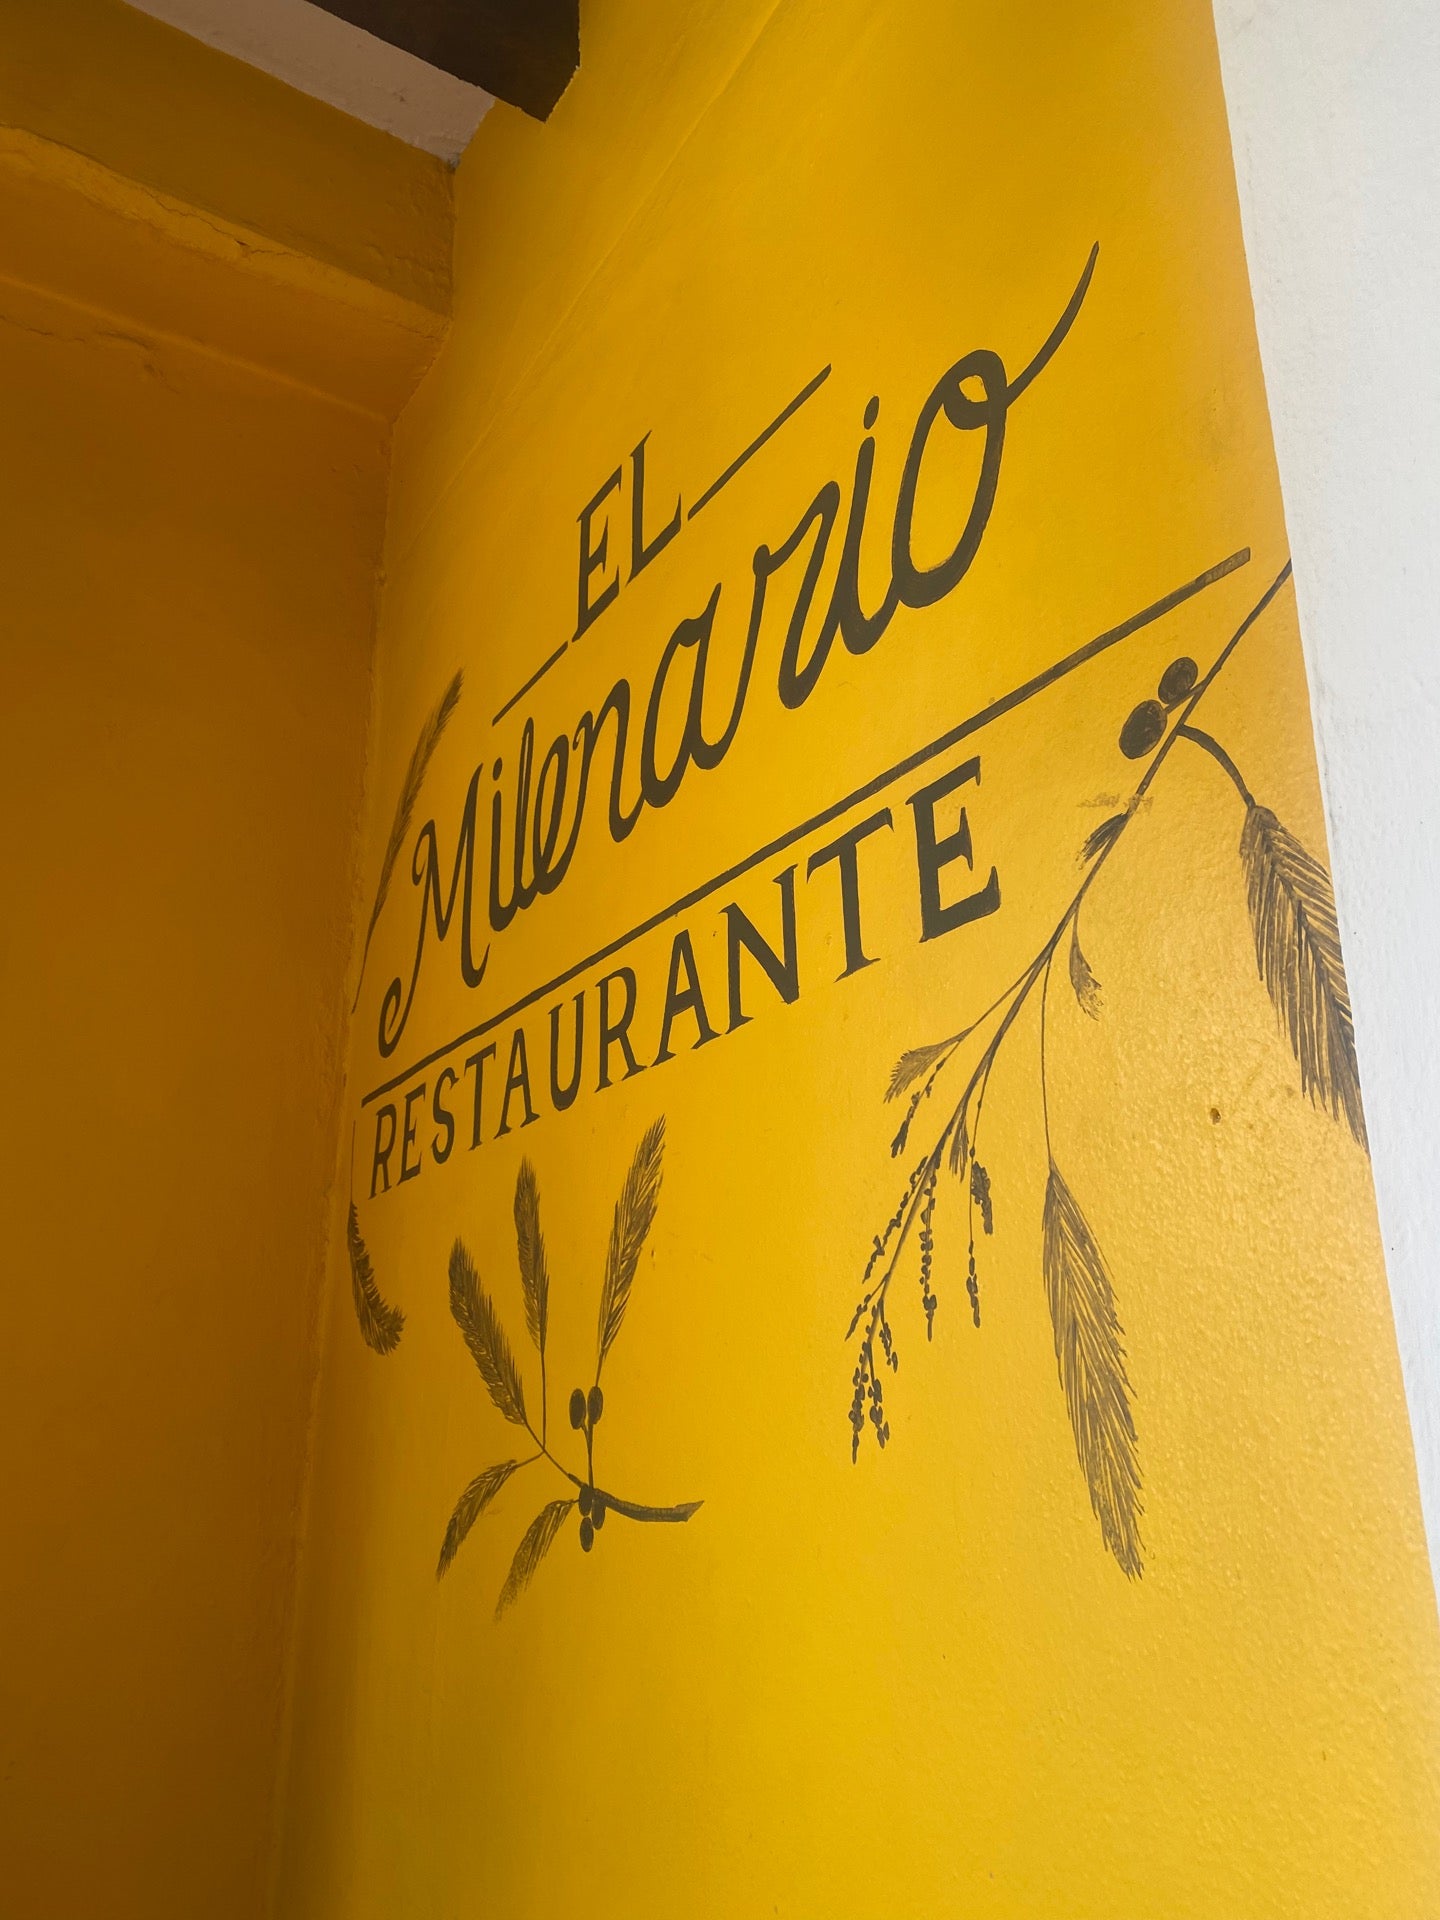 Restaurante "El Milenario"